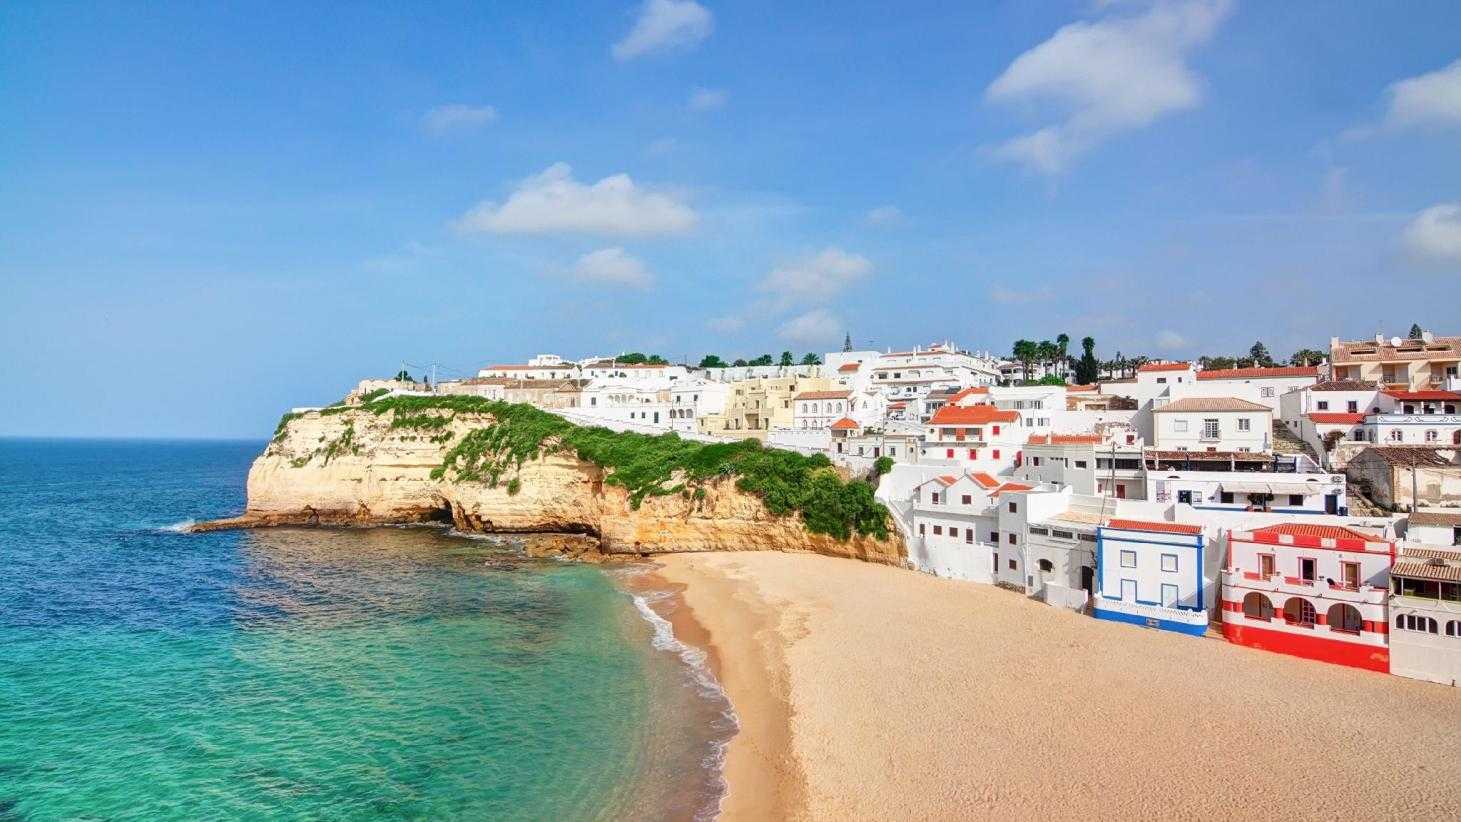 Где лучший пляжный отдых в Португалии в 2022 году Когда ехать отдыхать Обзор погоды и лучших мест для отдыха на море